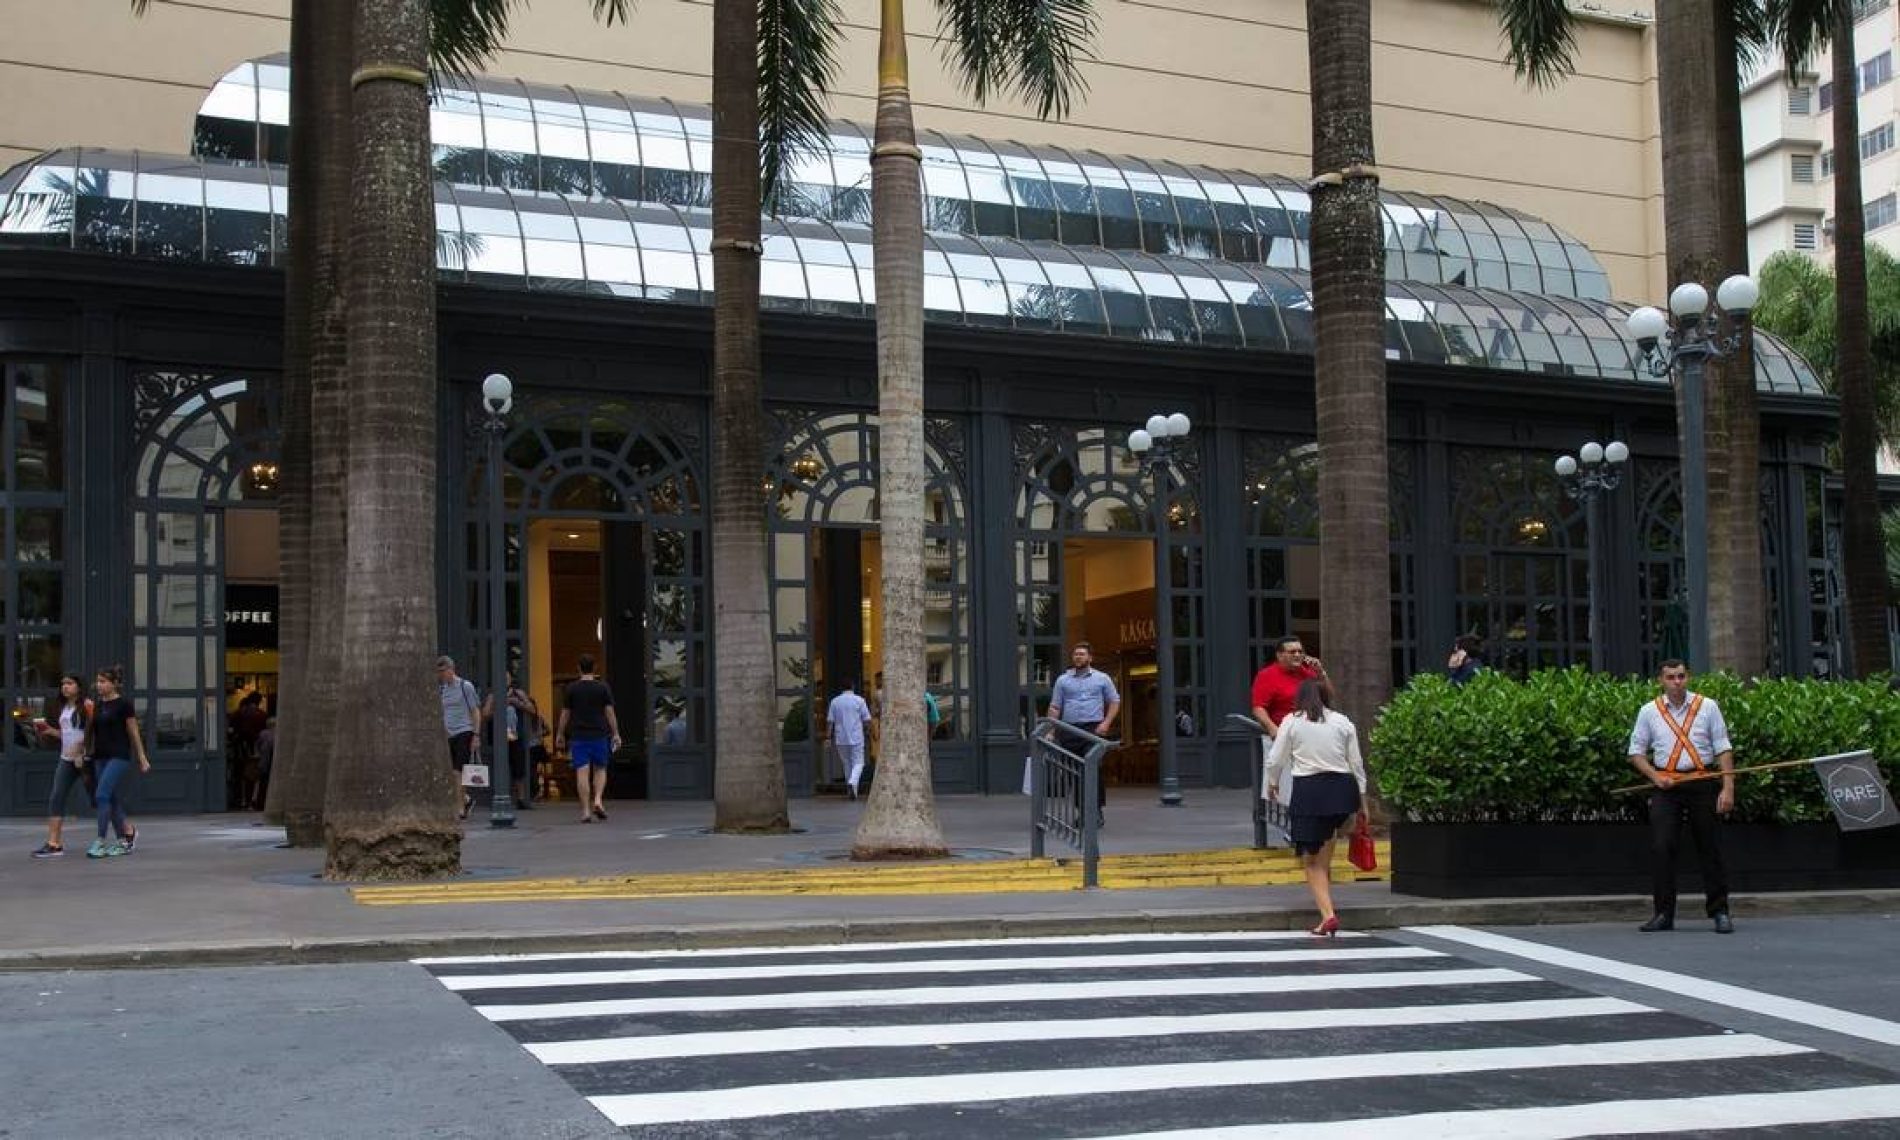 Doria determina o fechamento de shoppings em São Paulo por causa da crise do coronavírus